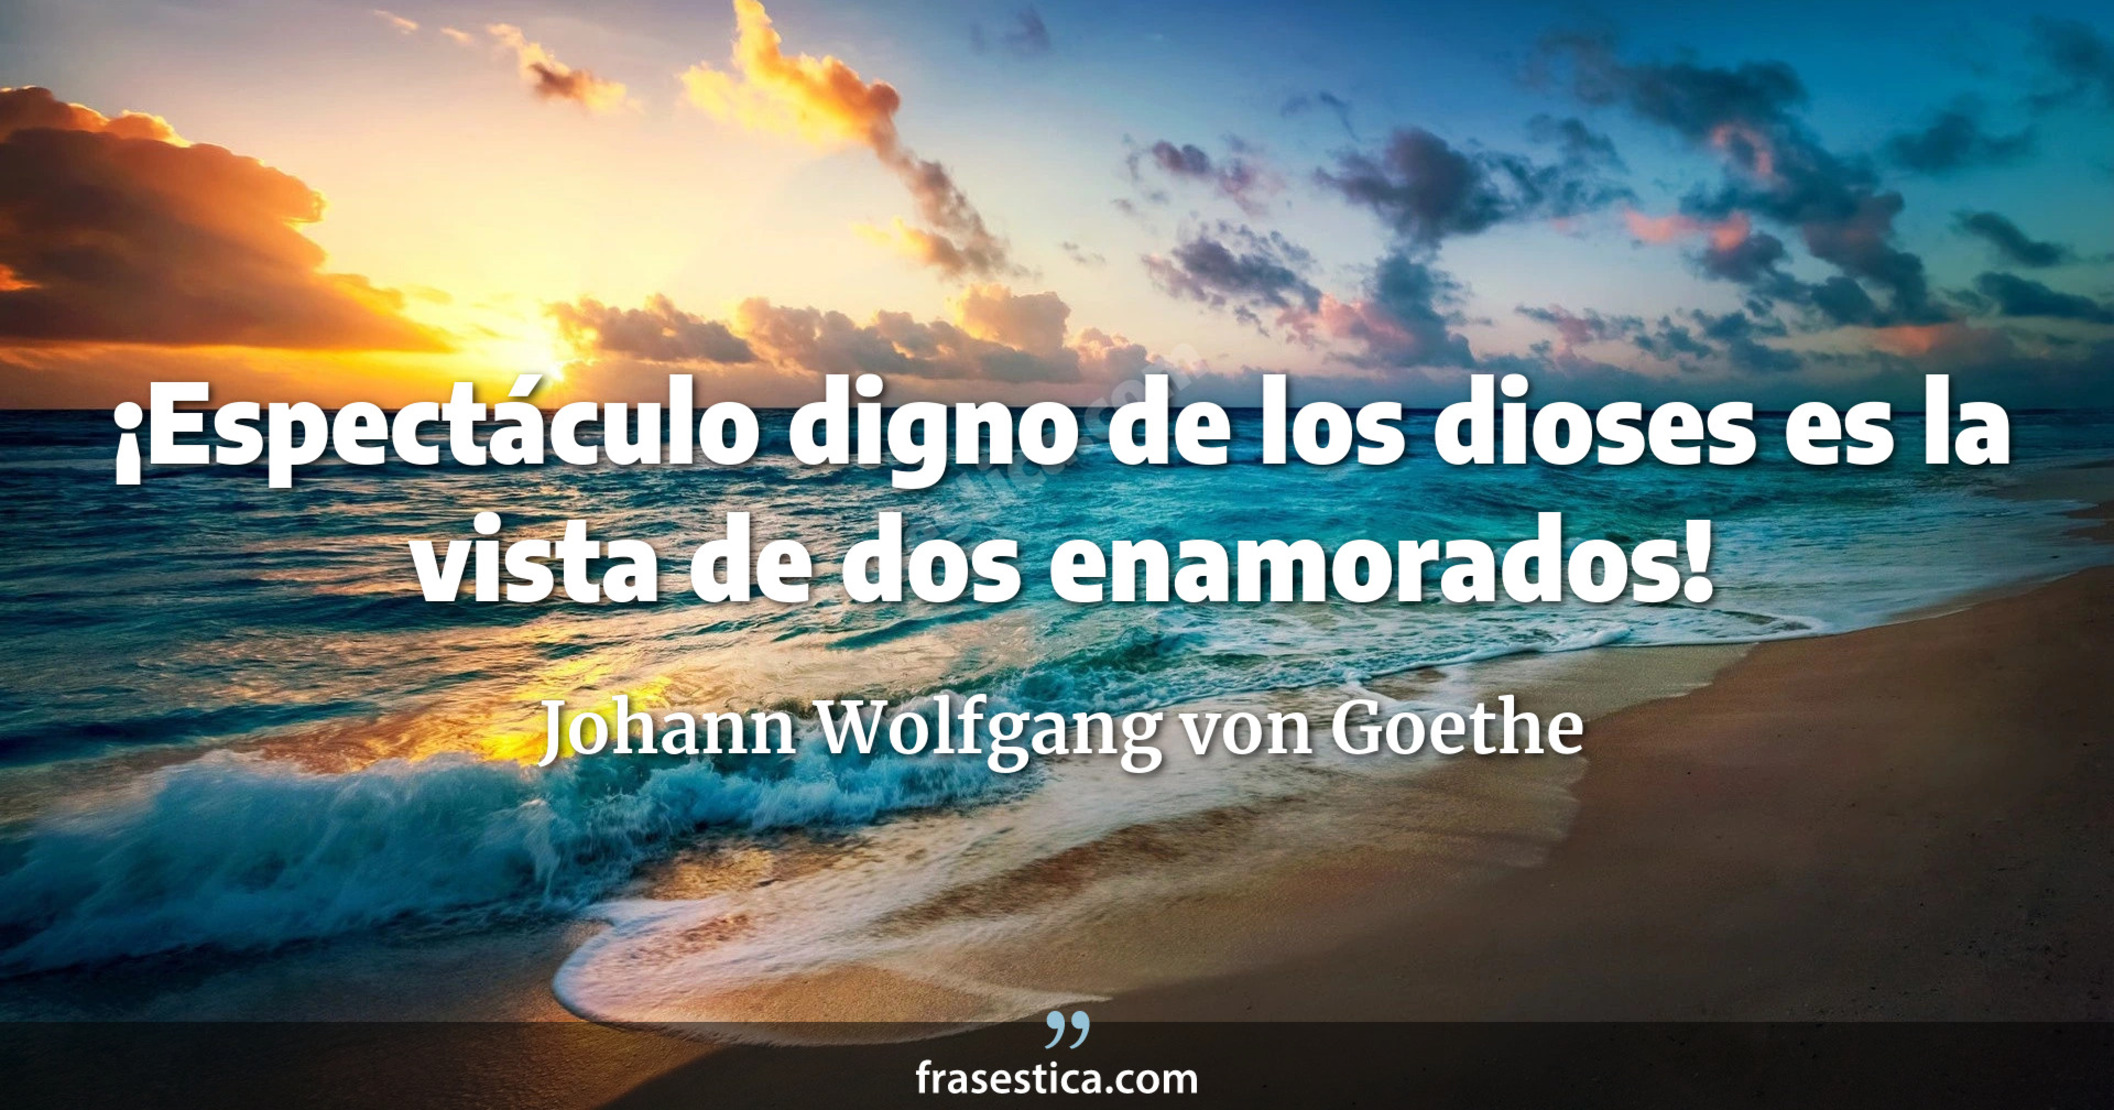 ¡Espectáculo digno de los dioses es la vista de dos enamorados! - Johann Wolfgang von Goethe